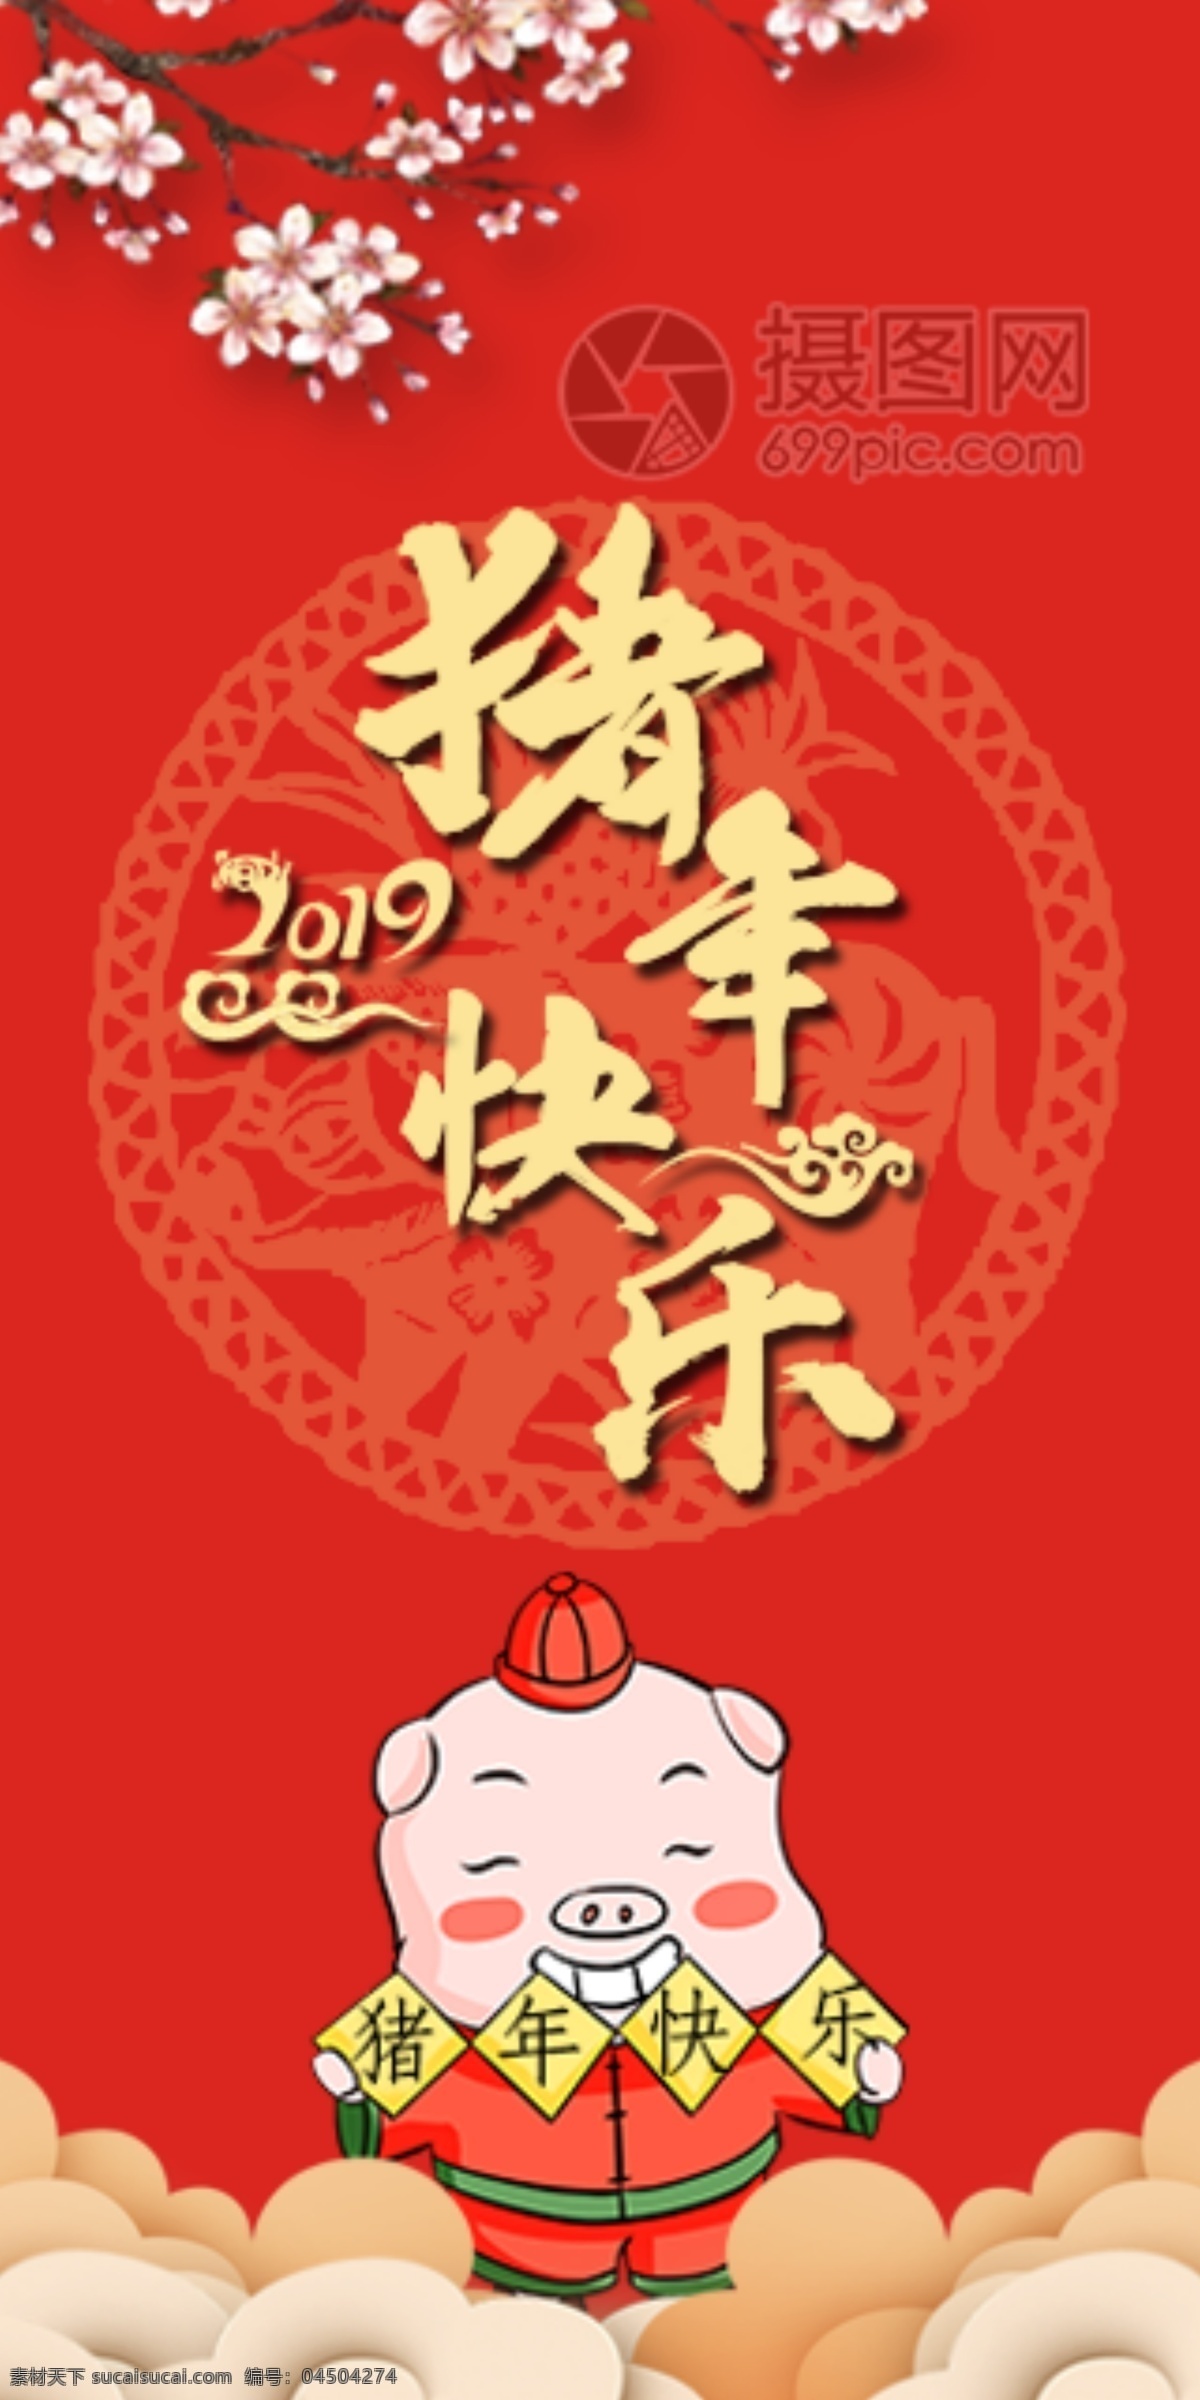 2019 猪年 快乐 新春 红包 猪年红包 新春红包 红包素材 红包设计 新年红 新年红包 猪年快乐